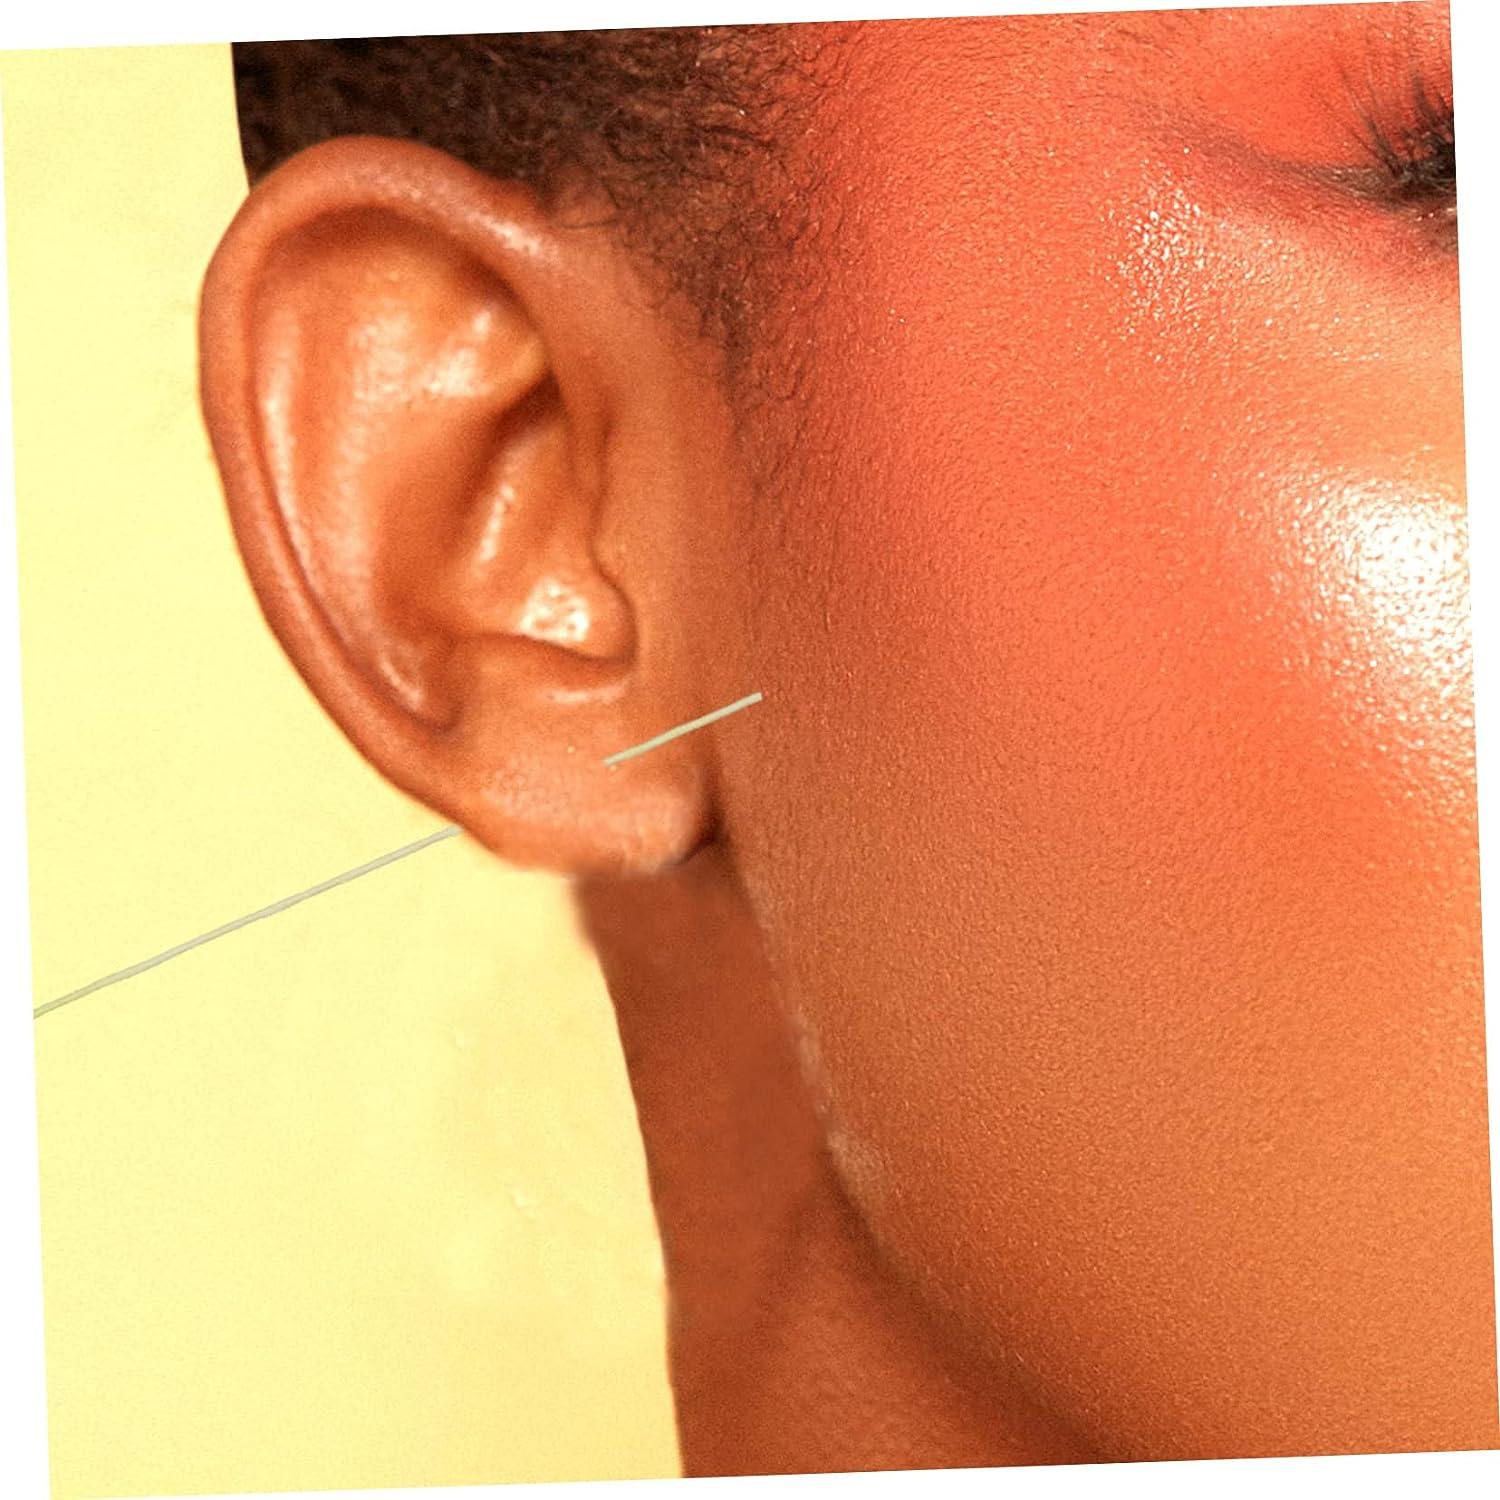 Earring Cleaner for Pierced Ears - Earrings Hole Cleaner,Piercing Aftercare  Cleaner Ear Hole Cleaning Lines, Ear Piercing Care Cleaning Tool for Girls  Women 